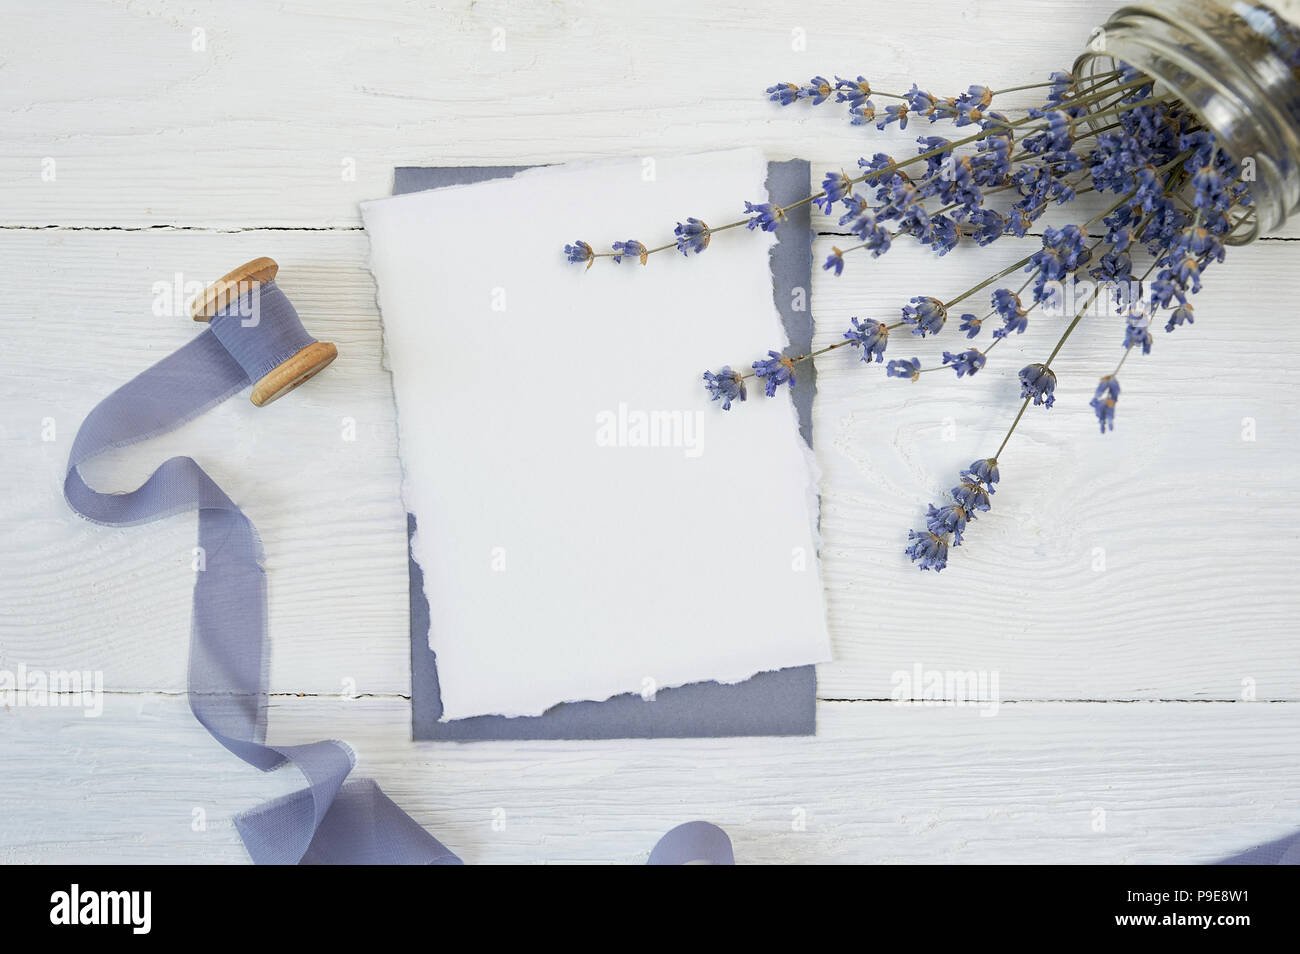 Carte vierge blanc sur fond de fleurs de lavande avec du ruban bleu sur fond blanc. Immersive avec enveloppe et carte vierge. Mise à plat. Vue d'en haut Banque D'Images